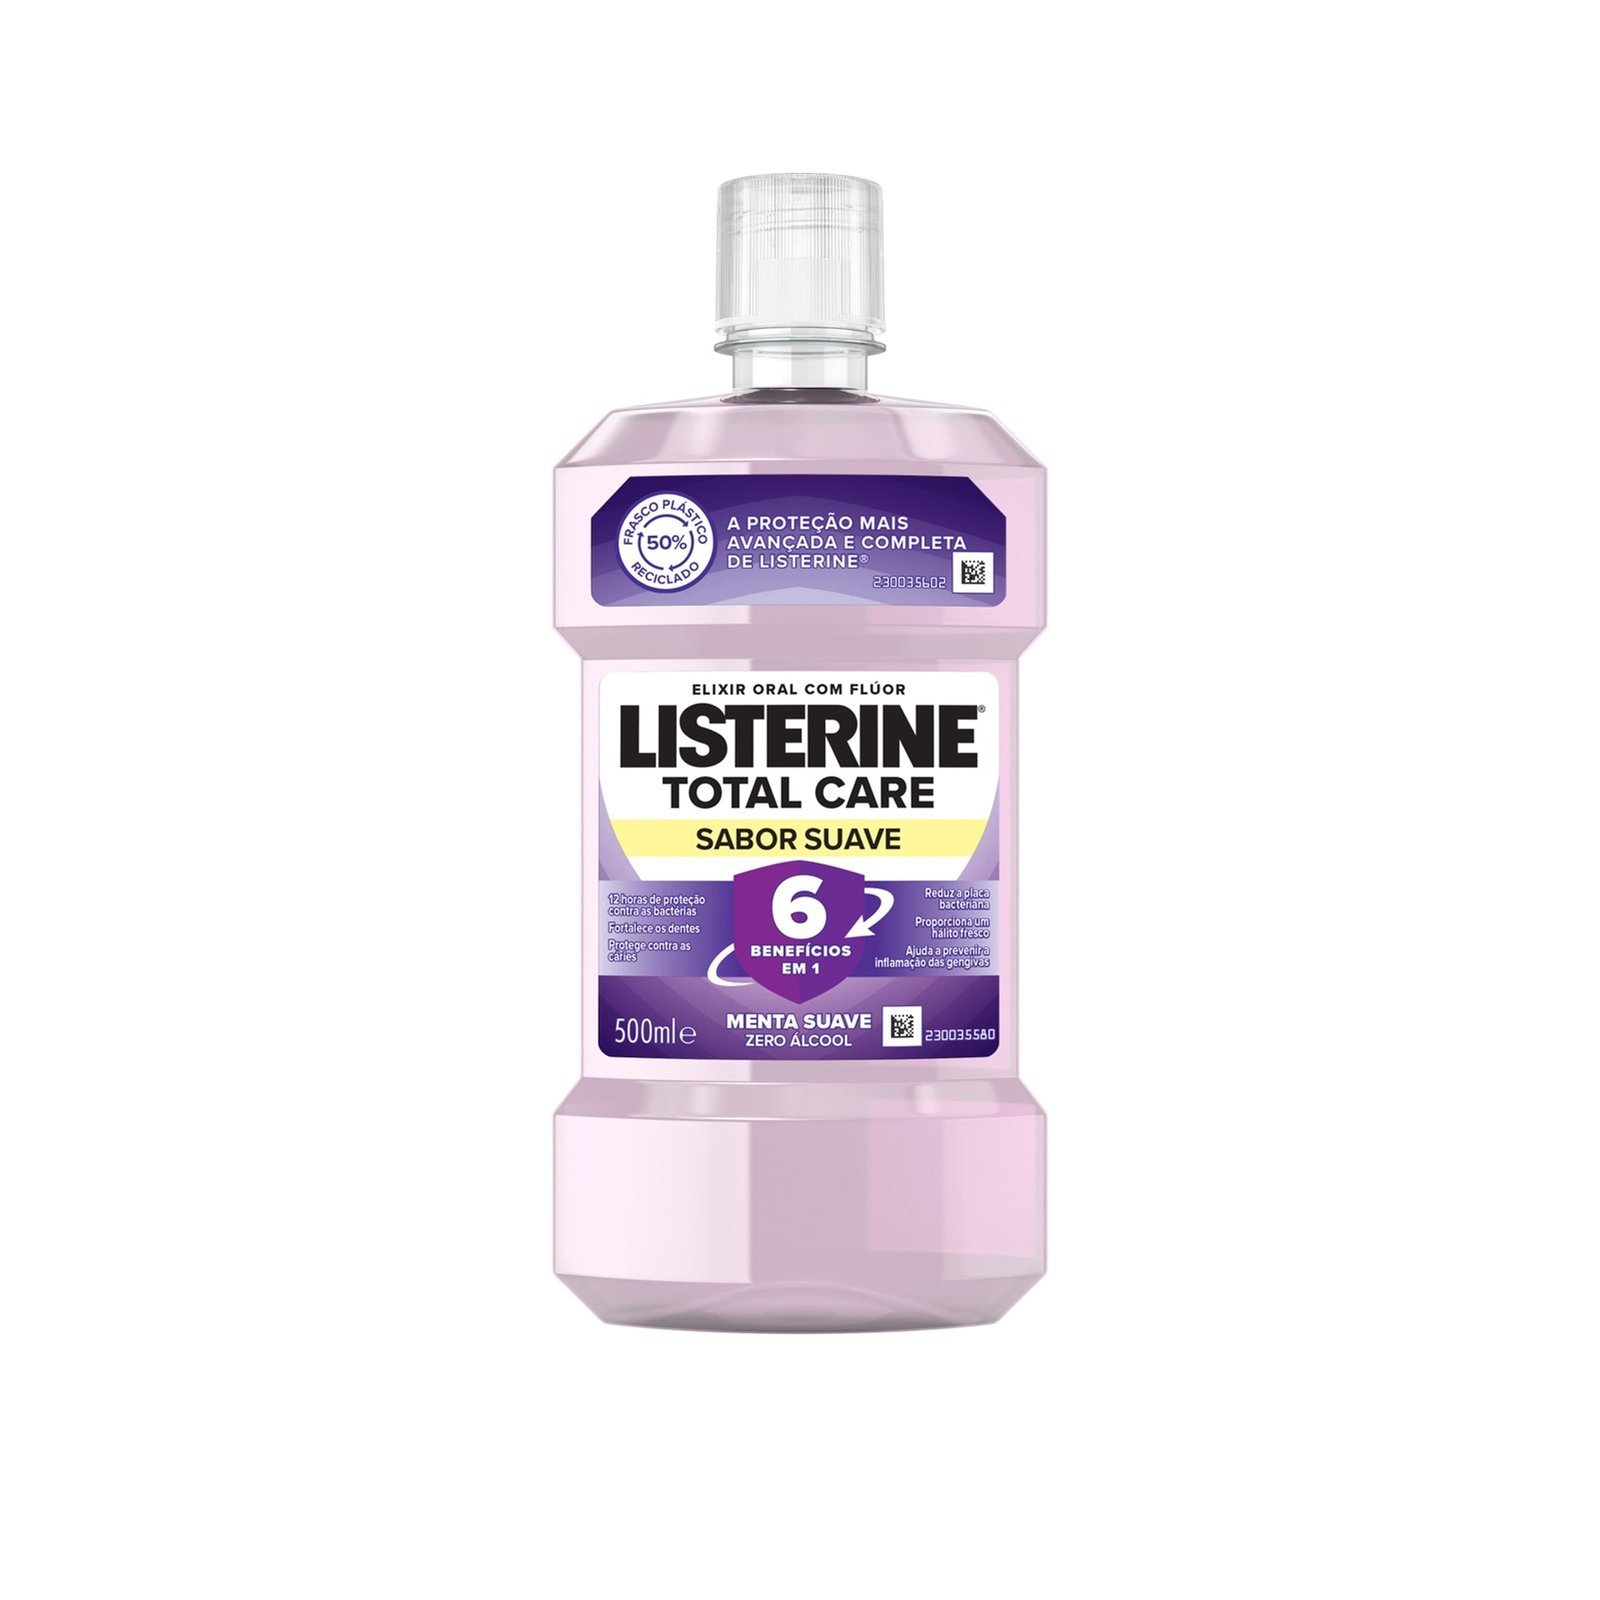 Listerine® Cool Mint Milder Taste Mouthwash